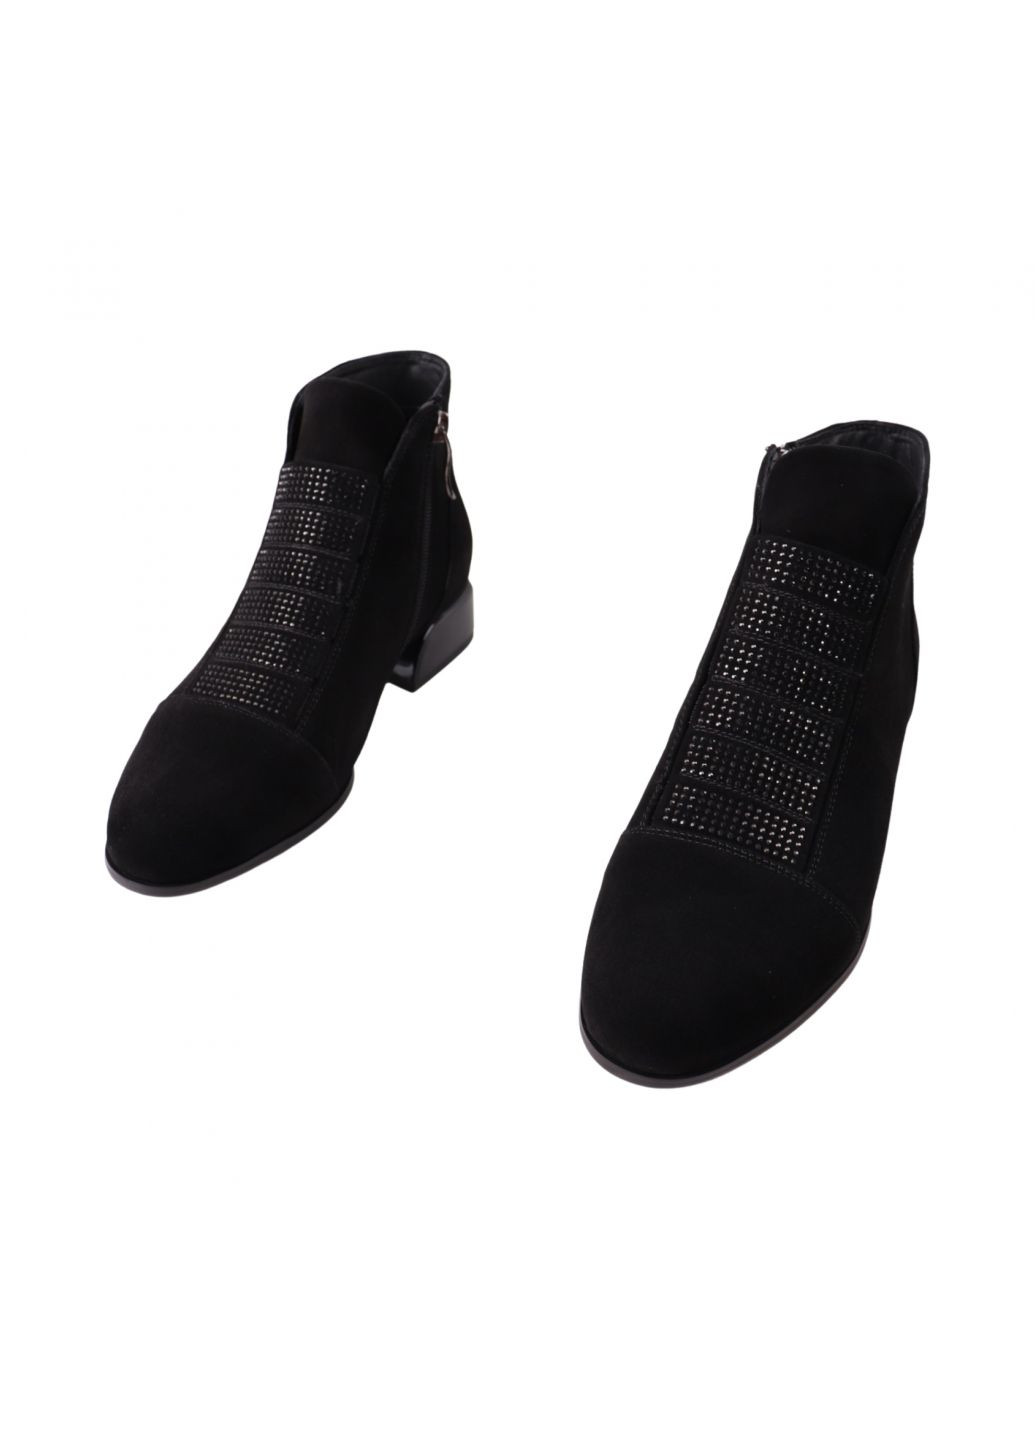 ботинки женские черные натуральная замша Velly